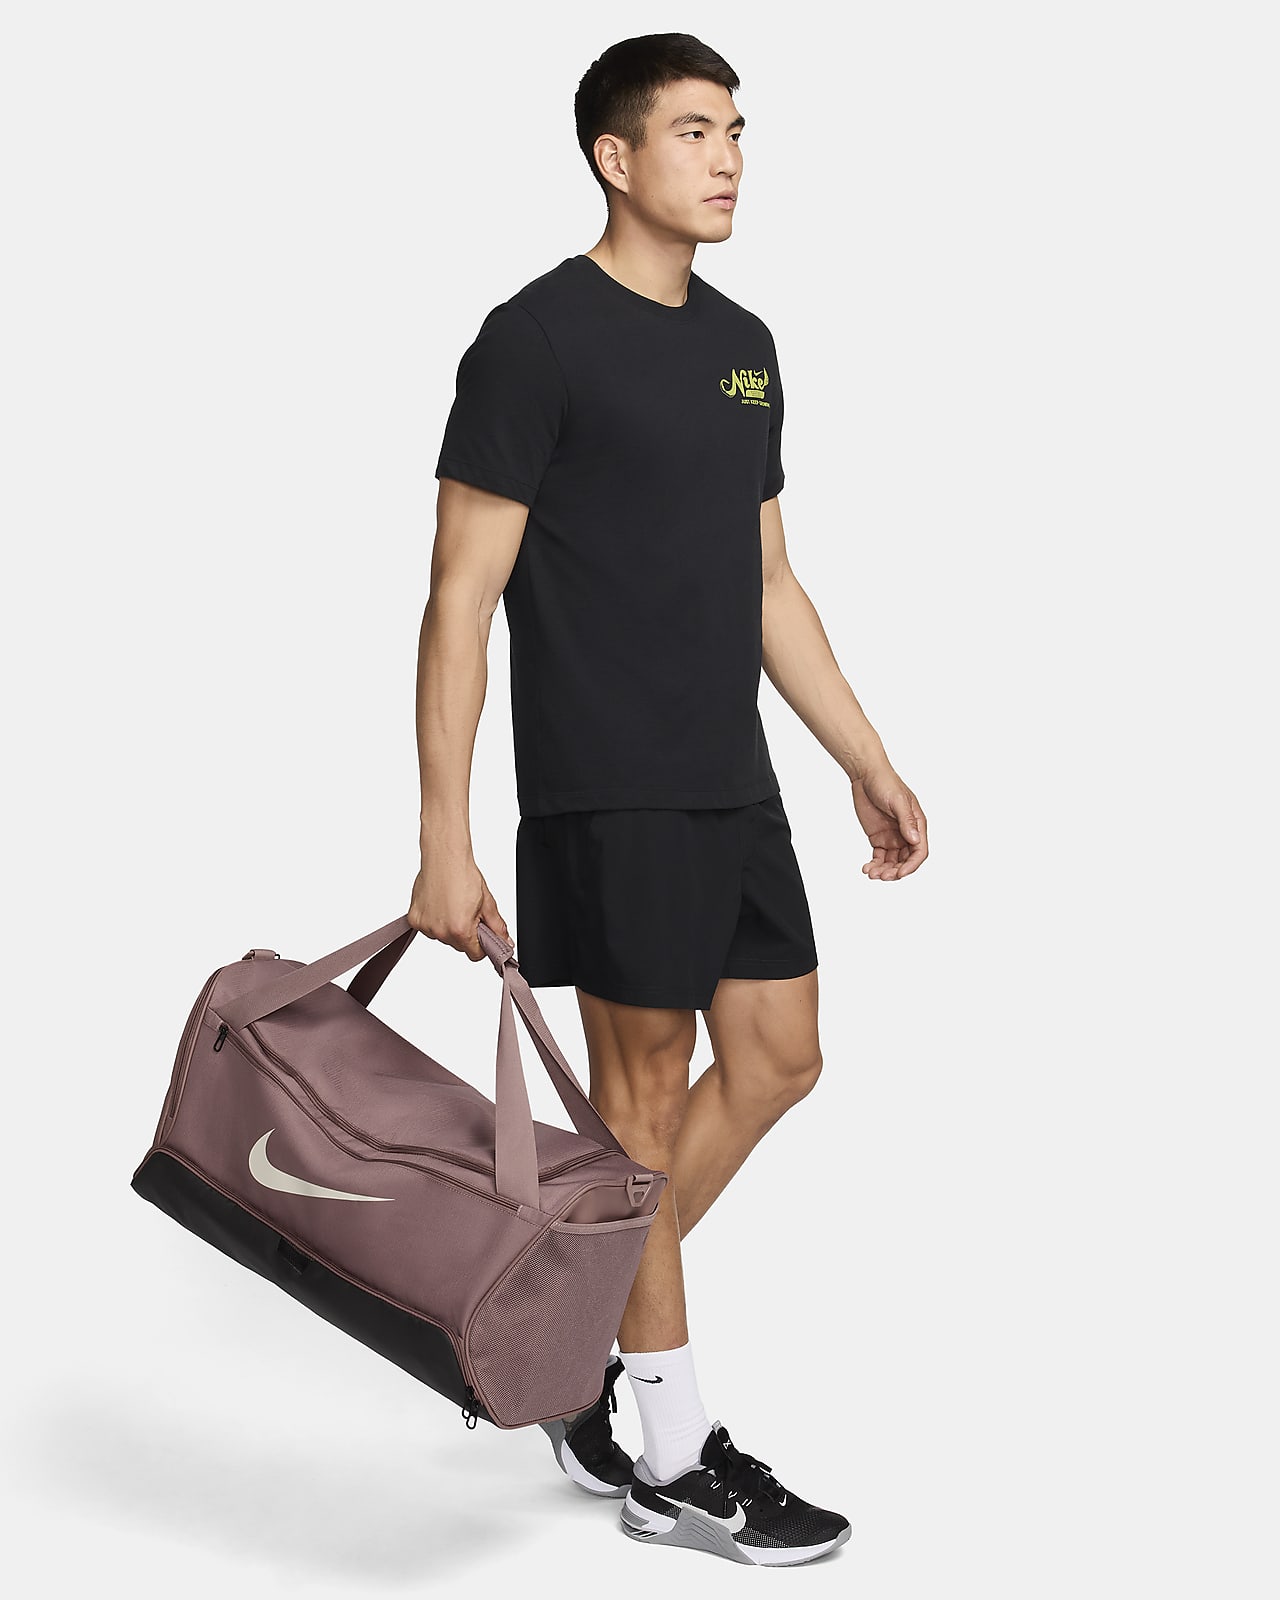 Nike Brasilia 9.5 Training Duffel Bag (Medium, 60L) – Peligro Sports